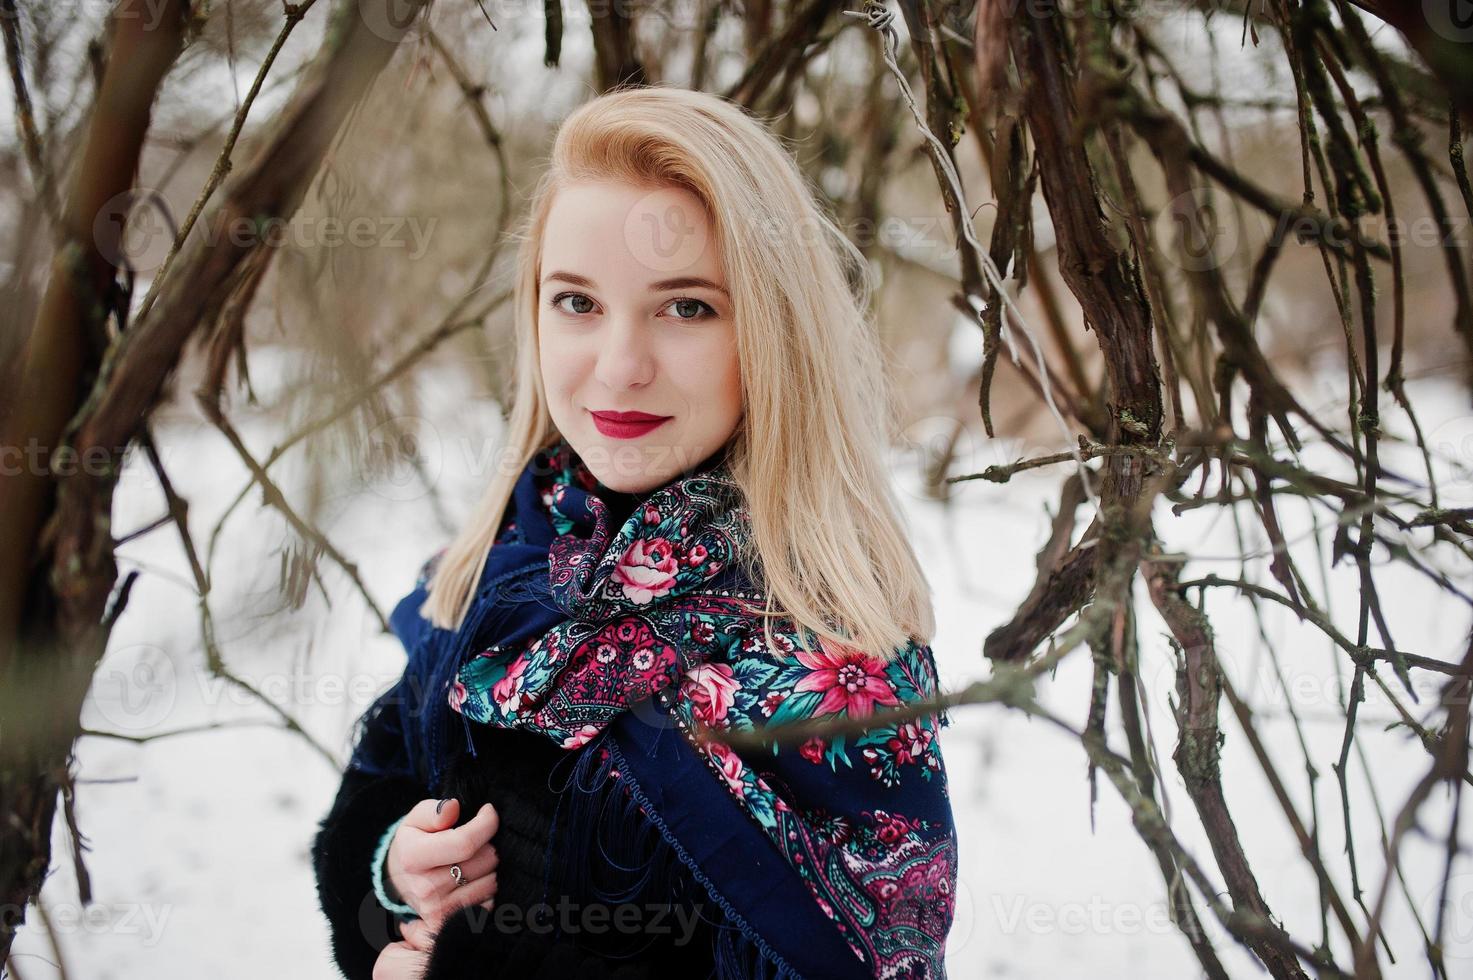 chica rubia con bufanda bordada a mano posada en el día de invierno. pañuelo de mujer. foto